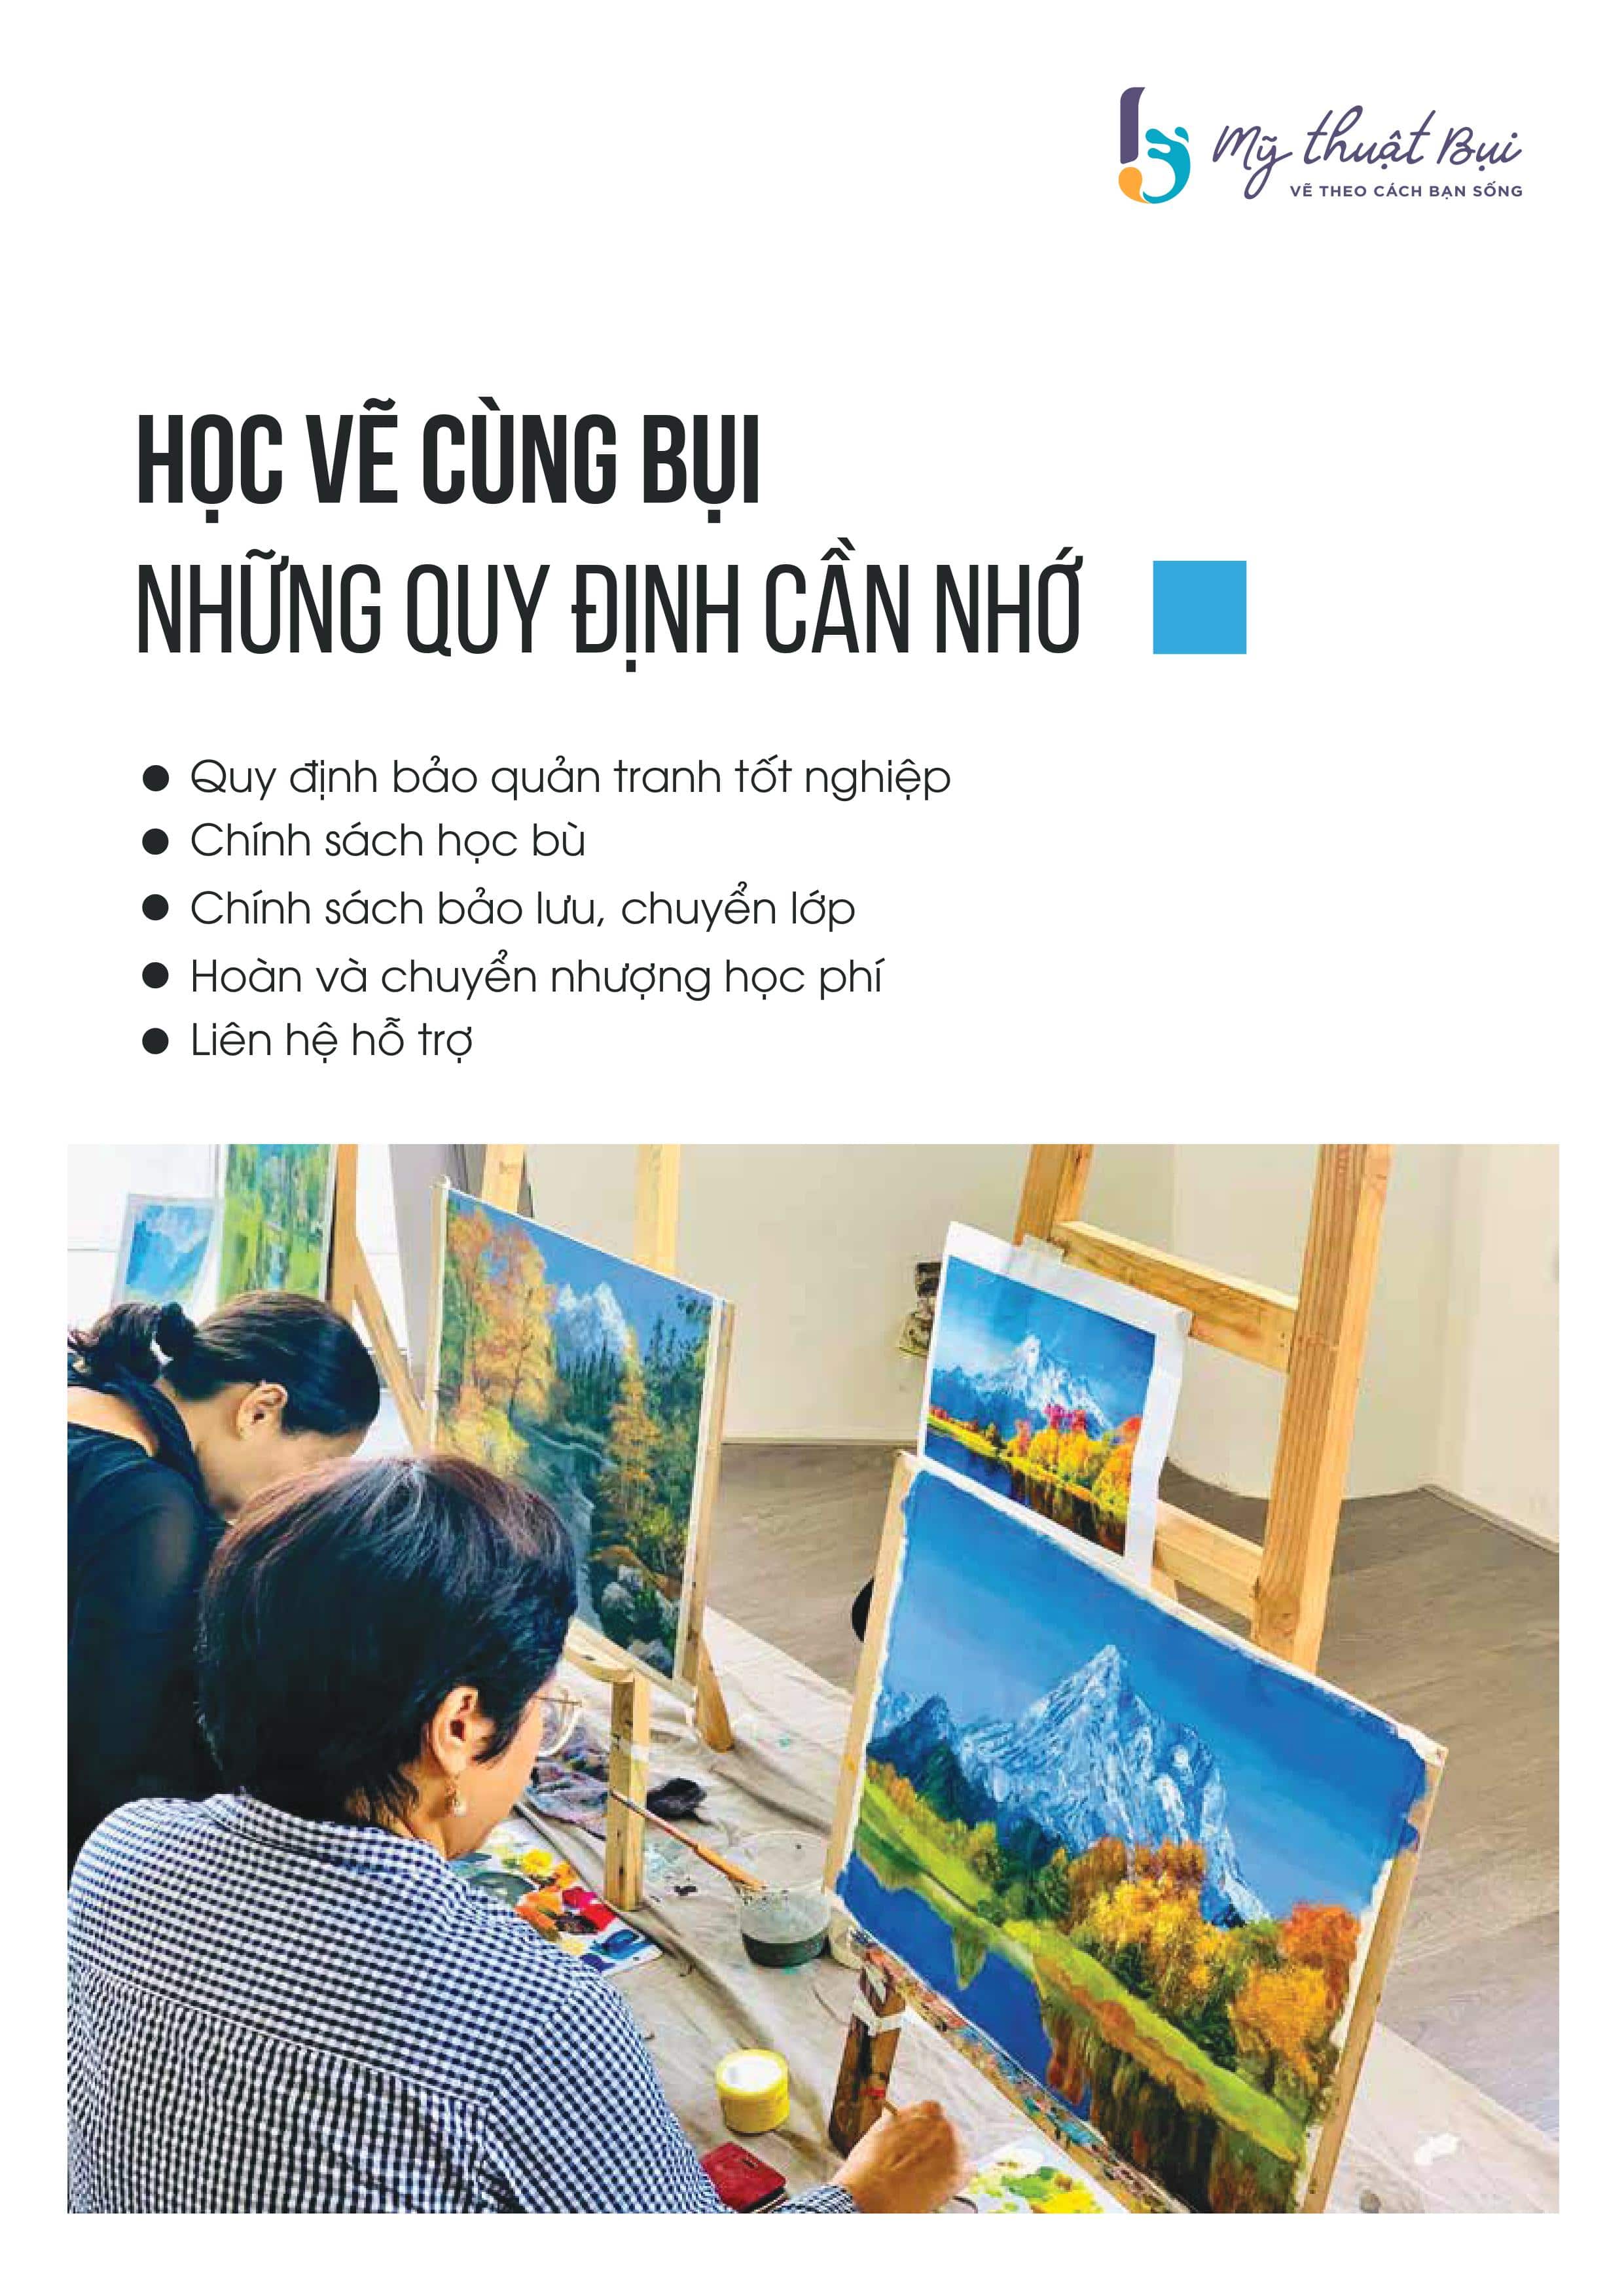 Bạn đang muốn tìm hiểu về nội quy lớp vẽ Mỹ thuật Bụi Sài Gòn? Hãy đến với chúng tôi, nơi chúng tôi đảm bảo một môi trường học tập chất lượng và thân thiện. Hãy tham gia và trở thành một phần của cộng đồng vẽ tranh nở rộ tại đây!